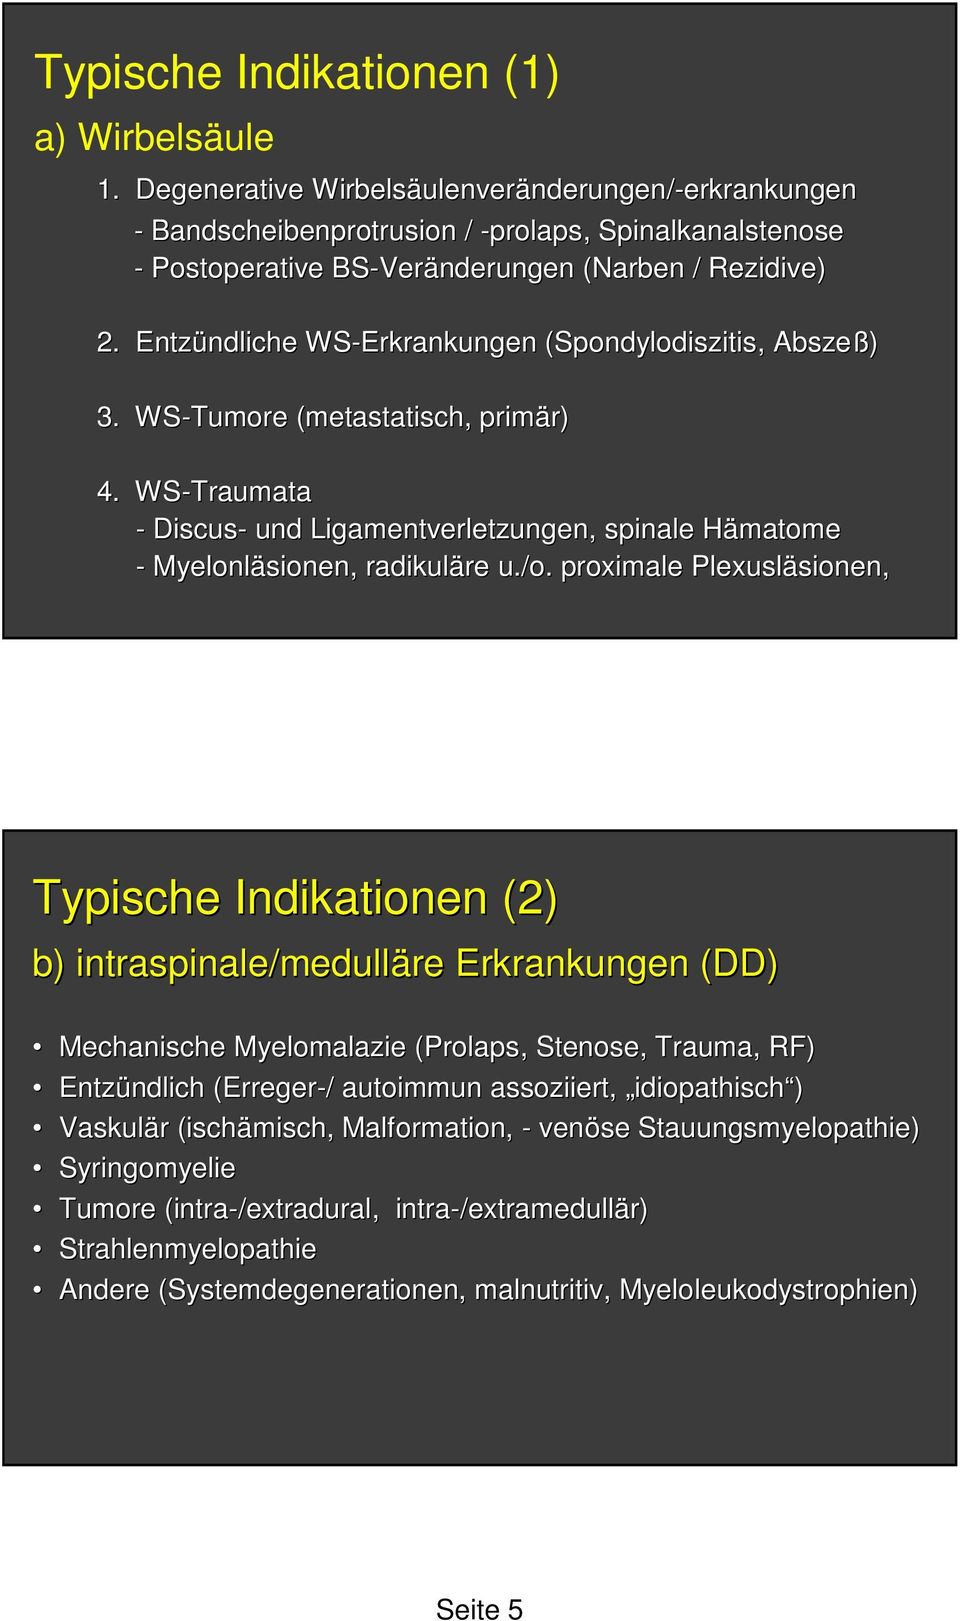 Entzündliche ndliche WS-Erkrankungen (Spondylodiszitis( Spondylodiszitis, Abszeß) 3. WS-Tumore (metastatisch( metastatisch,, primär) r) 4.